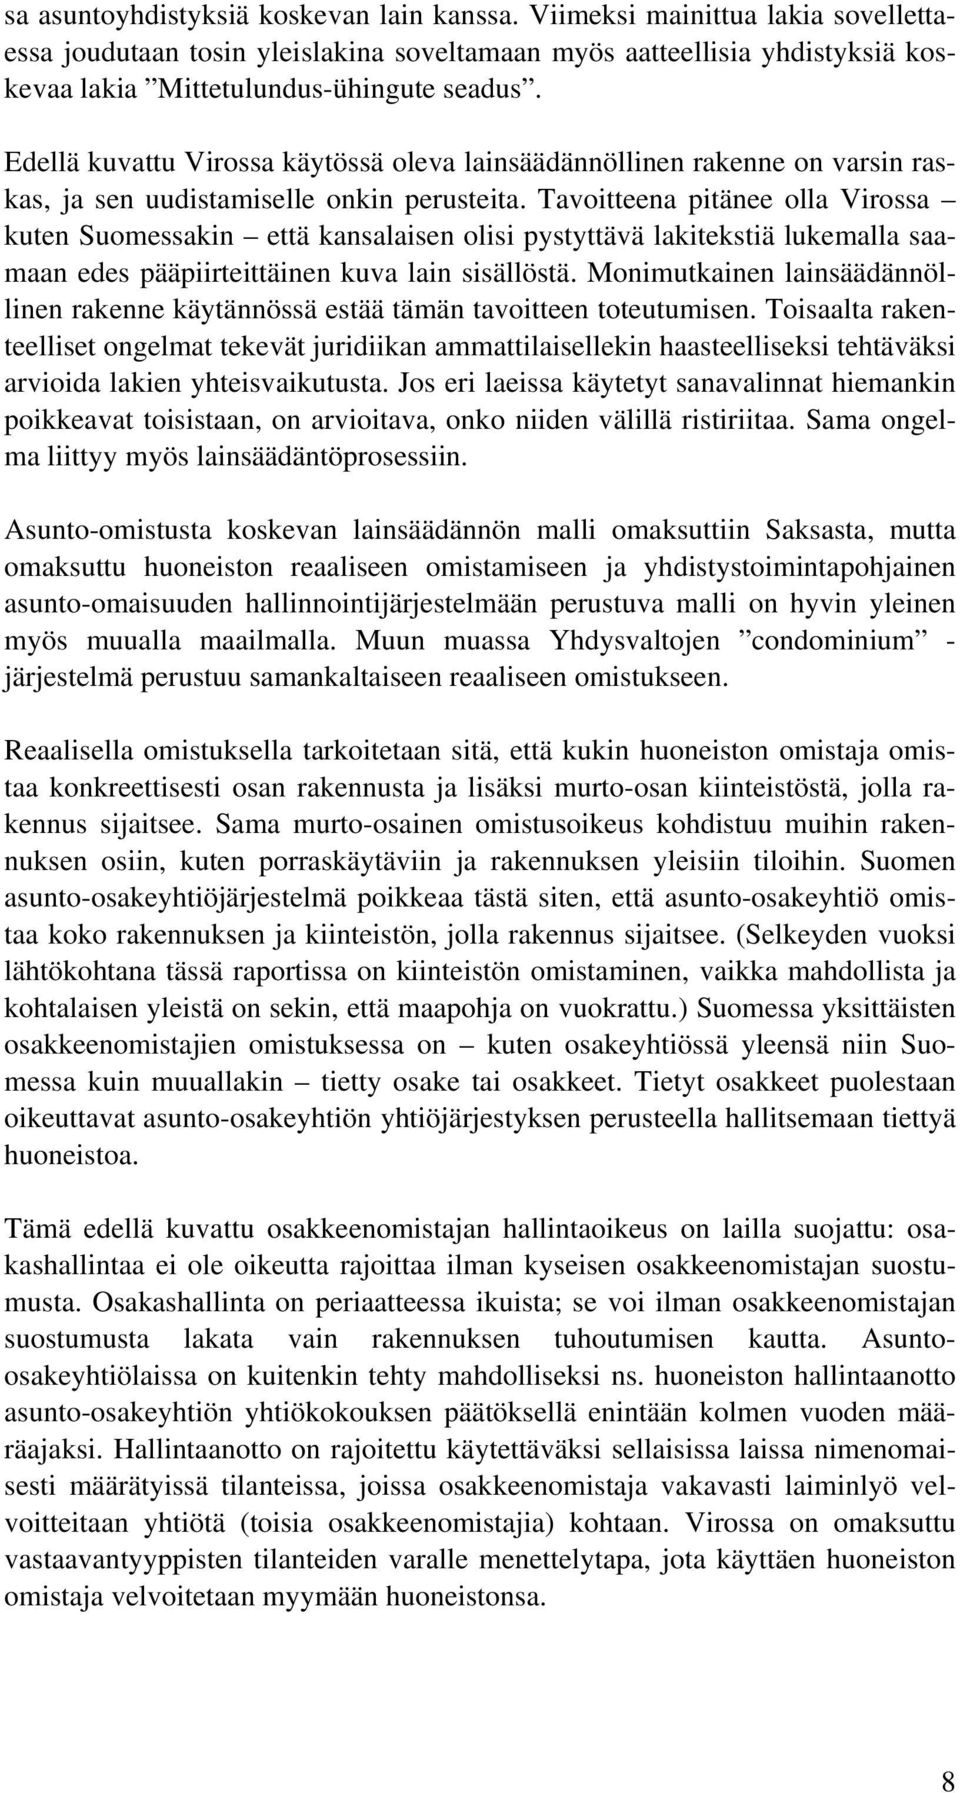 Tavoitteena pitänee olla Virossa kuten Suomessakin että kansalaisen olisi pystyttävä lakitekstiä lukemalla saamaan edes pääpiirteittäinen kuva lain sisällöstä.